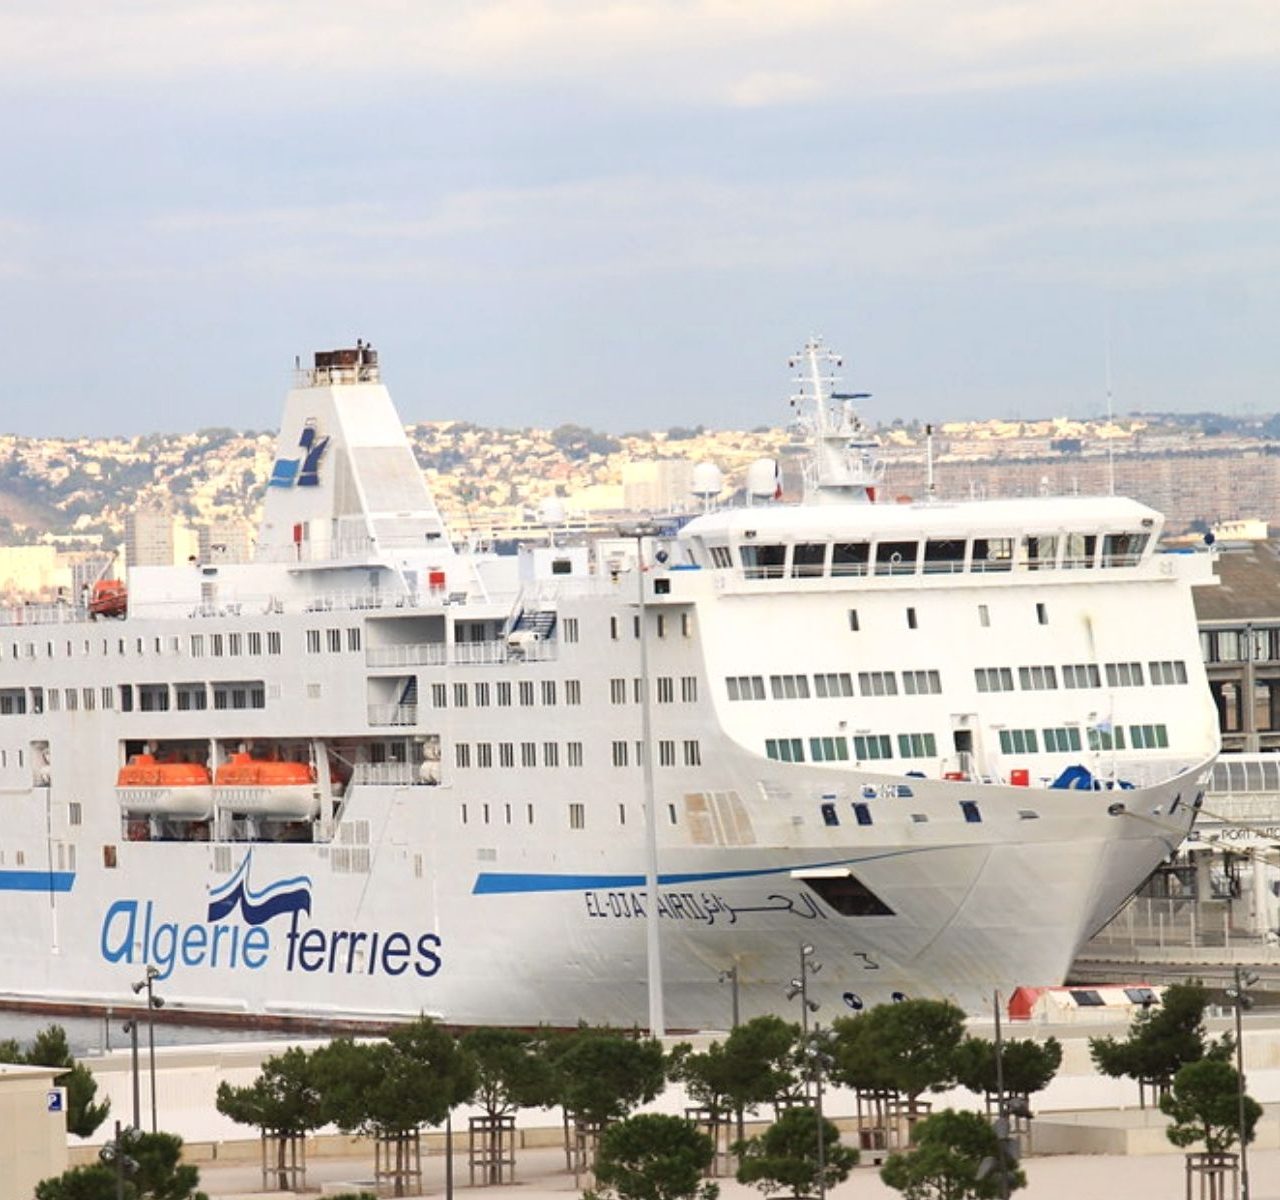 Algérie : Le ministère des Transports a donné son accord de principe à une dizaine de sociétés pour la création de nouvelles compagnies aériennes et maritimes locales 6